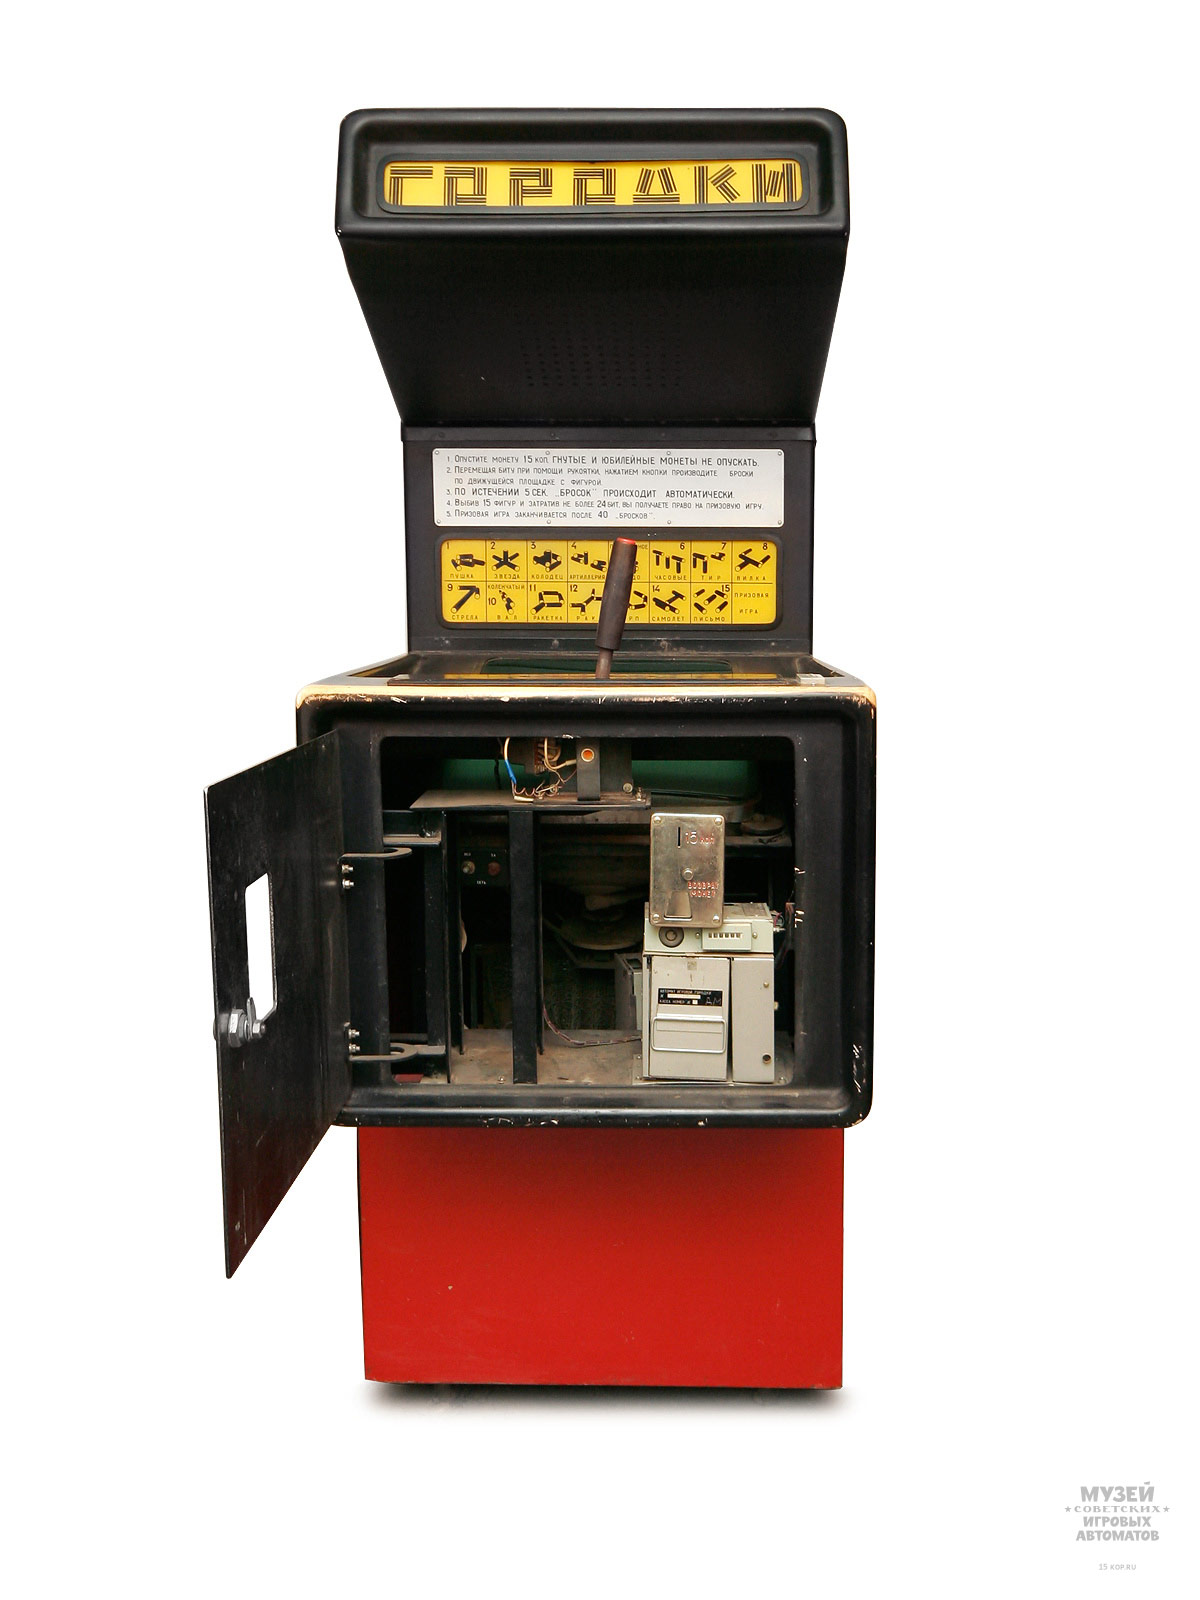 Игровые автоматы: откуда они взялись в СССР и как устроены - 9